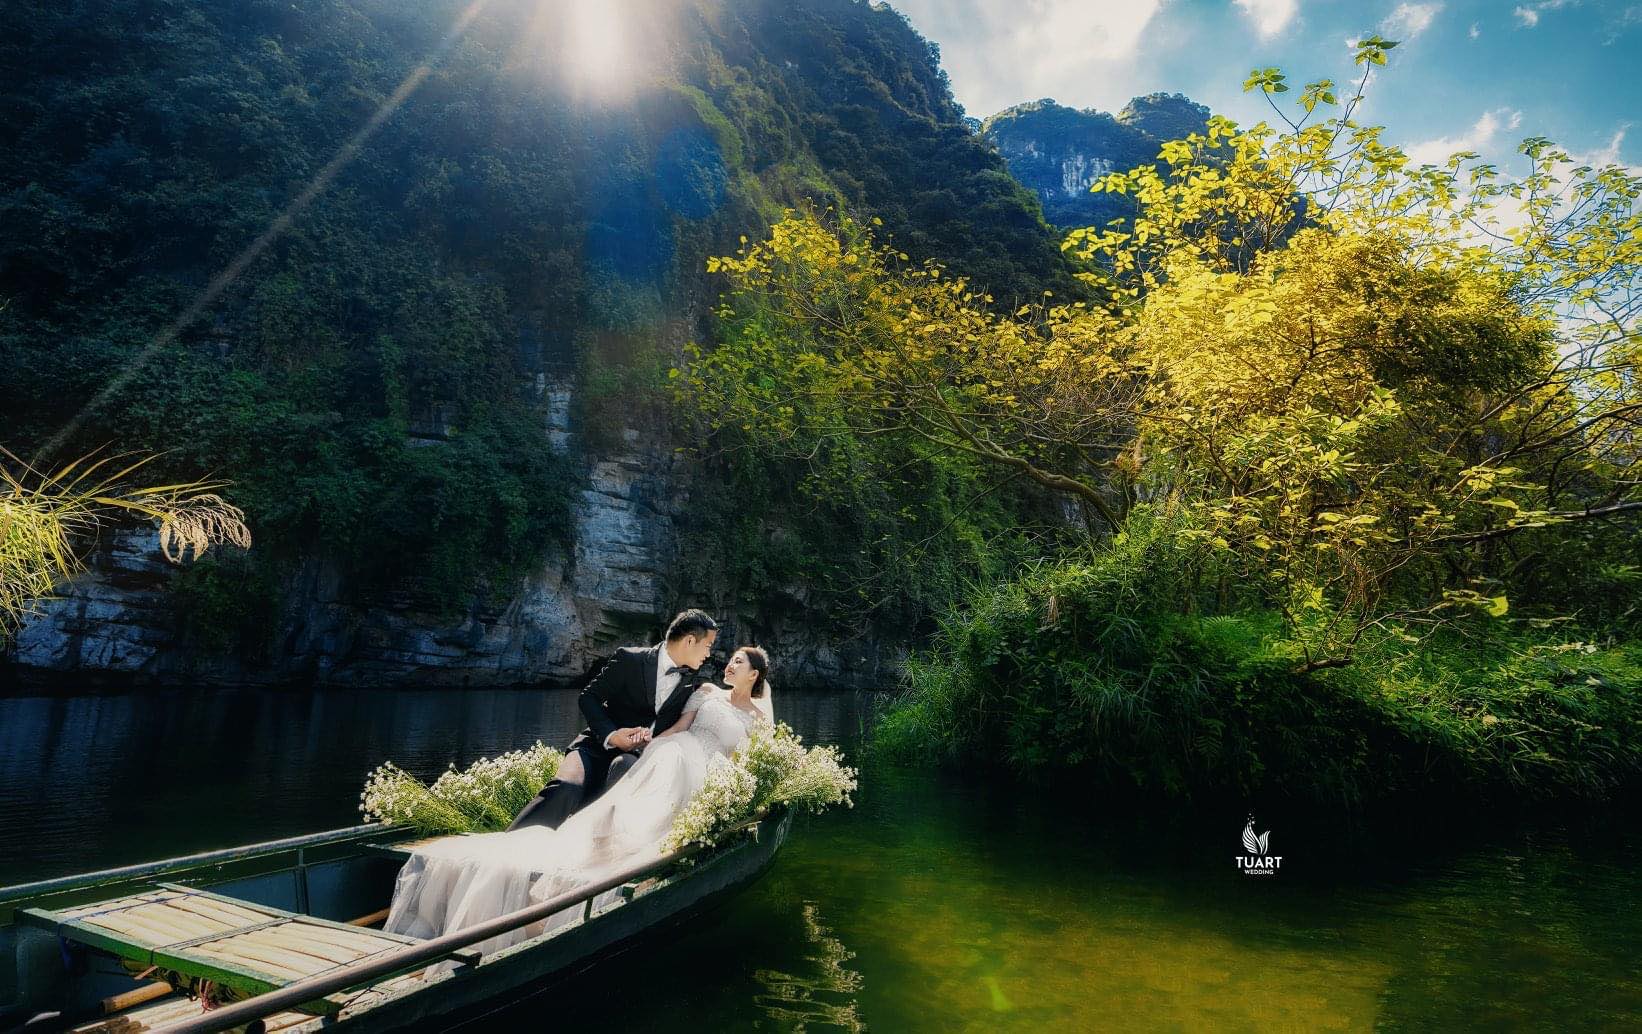 Tìm kiếm một studio chụp ảnh cưới đẹp tại Kiên Giang? Đến với studio chụp ảnh cưới Kiên Giang của chúng tôi, bạn sẽ được đắm chìm trong không gian lãng mạn và sang trọng, và được nhiếp ảnh gia chuyên nghiệp của chúng tôi dẫn dắt bước đi trong bộ ảnh cưới đẹp nhất.